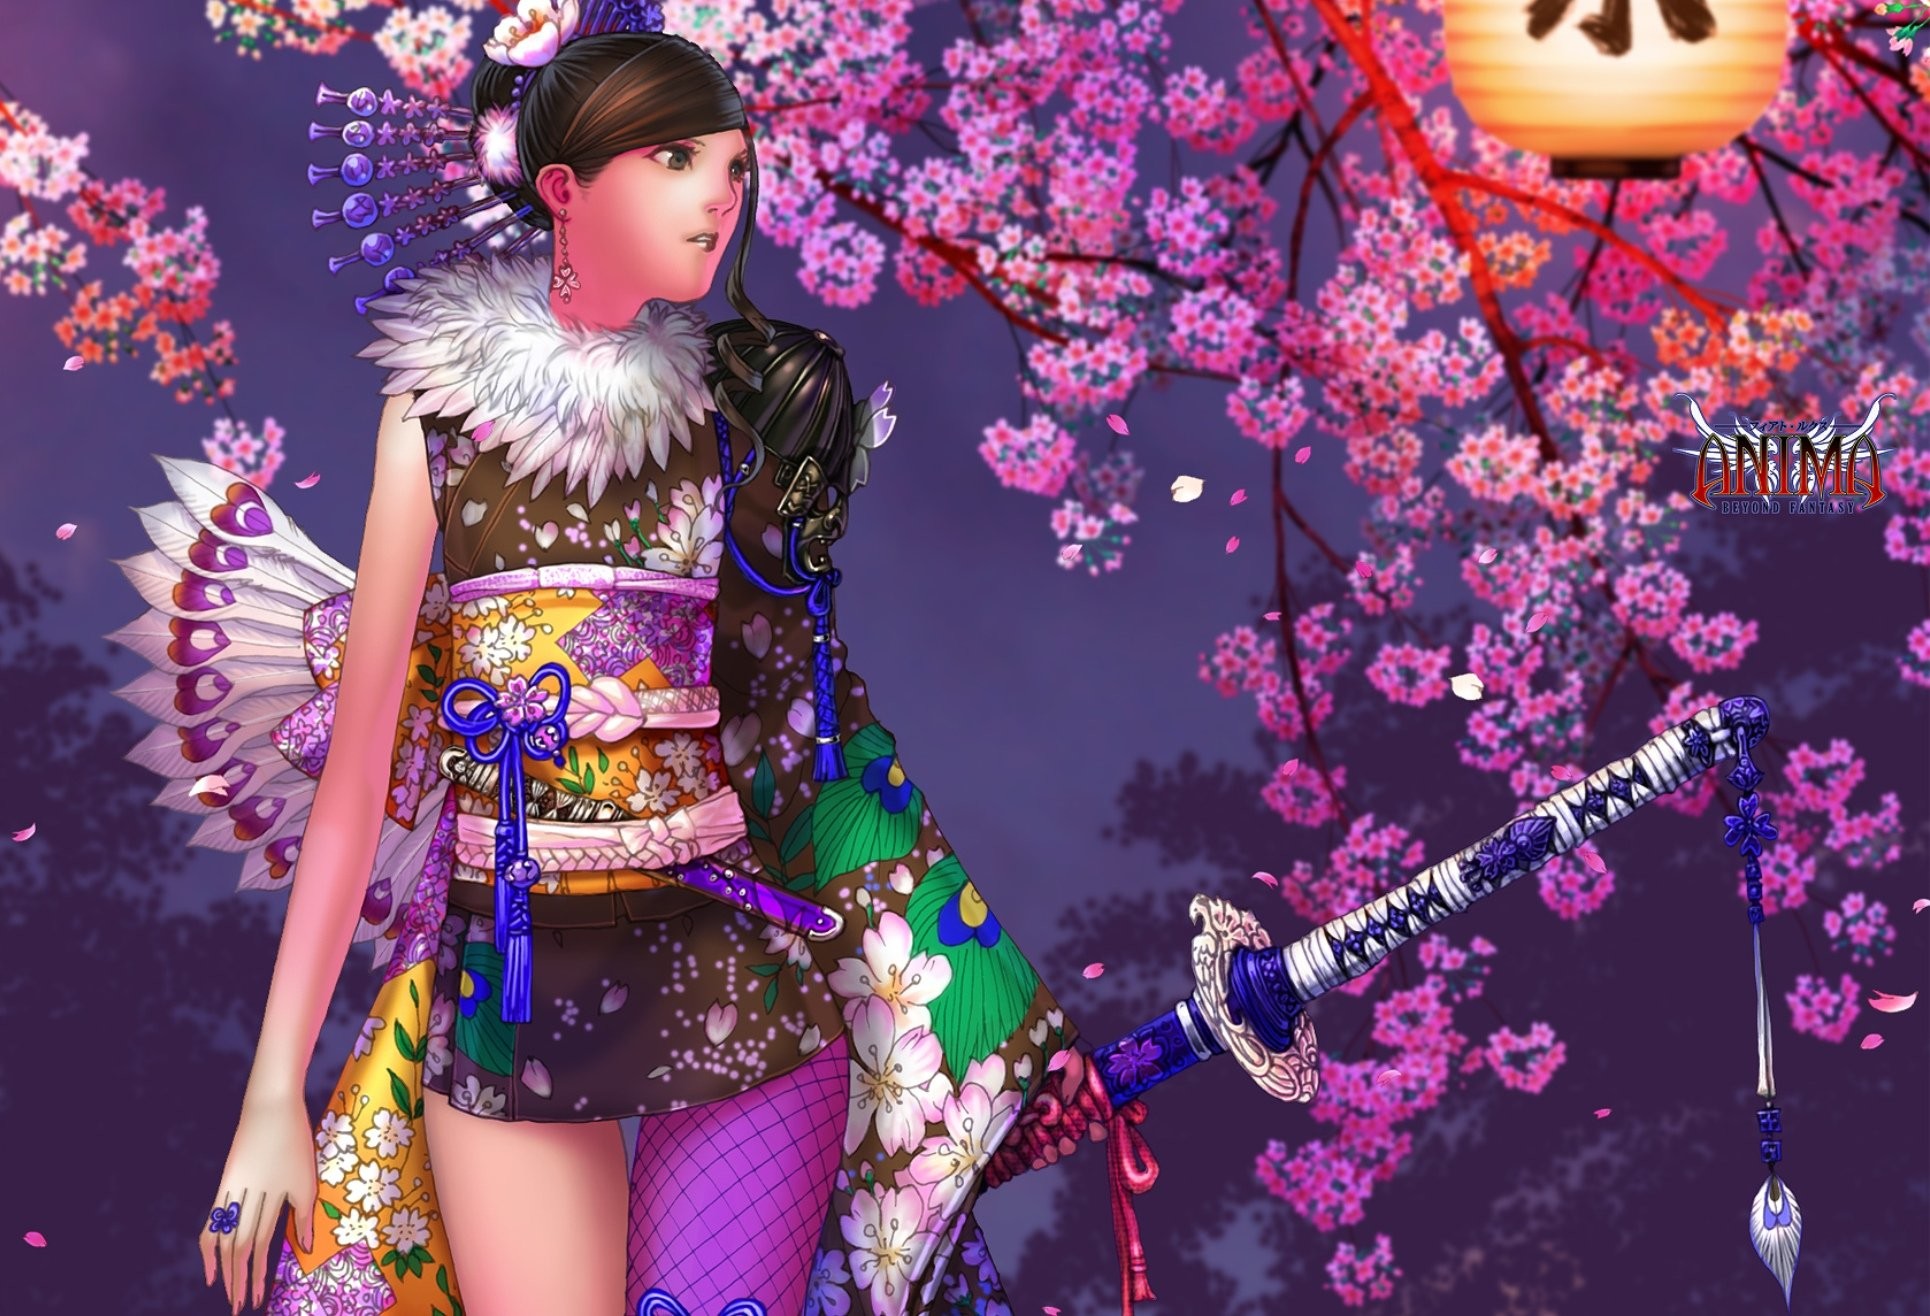 1930x1316 Samurai girl fantasy flower pink dress sword wallpaper |  | 744319  | WallpaperUP